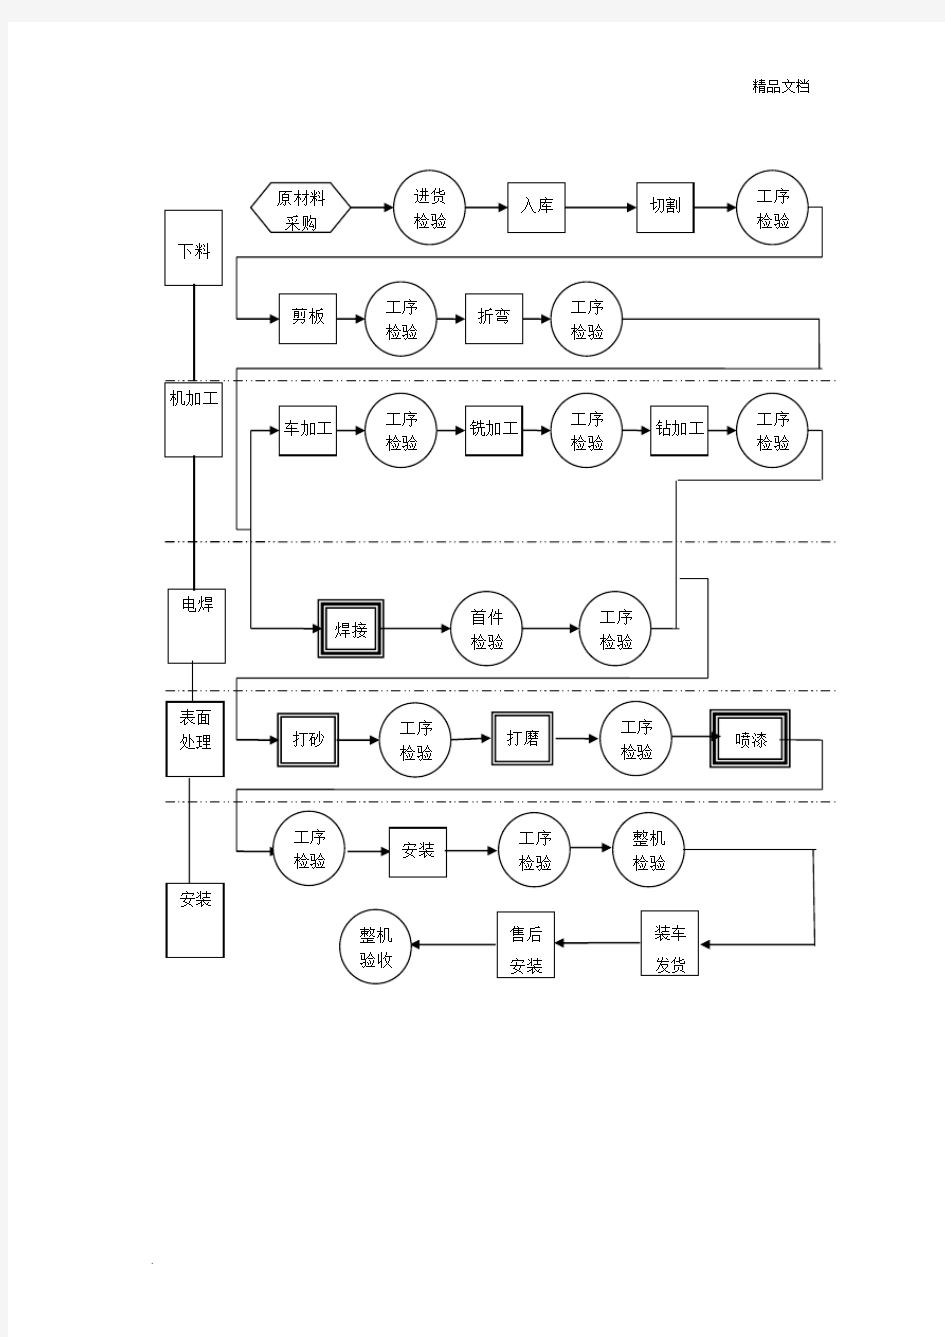 机械加工企业工艺流程图